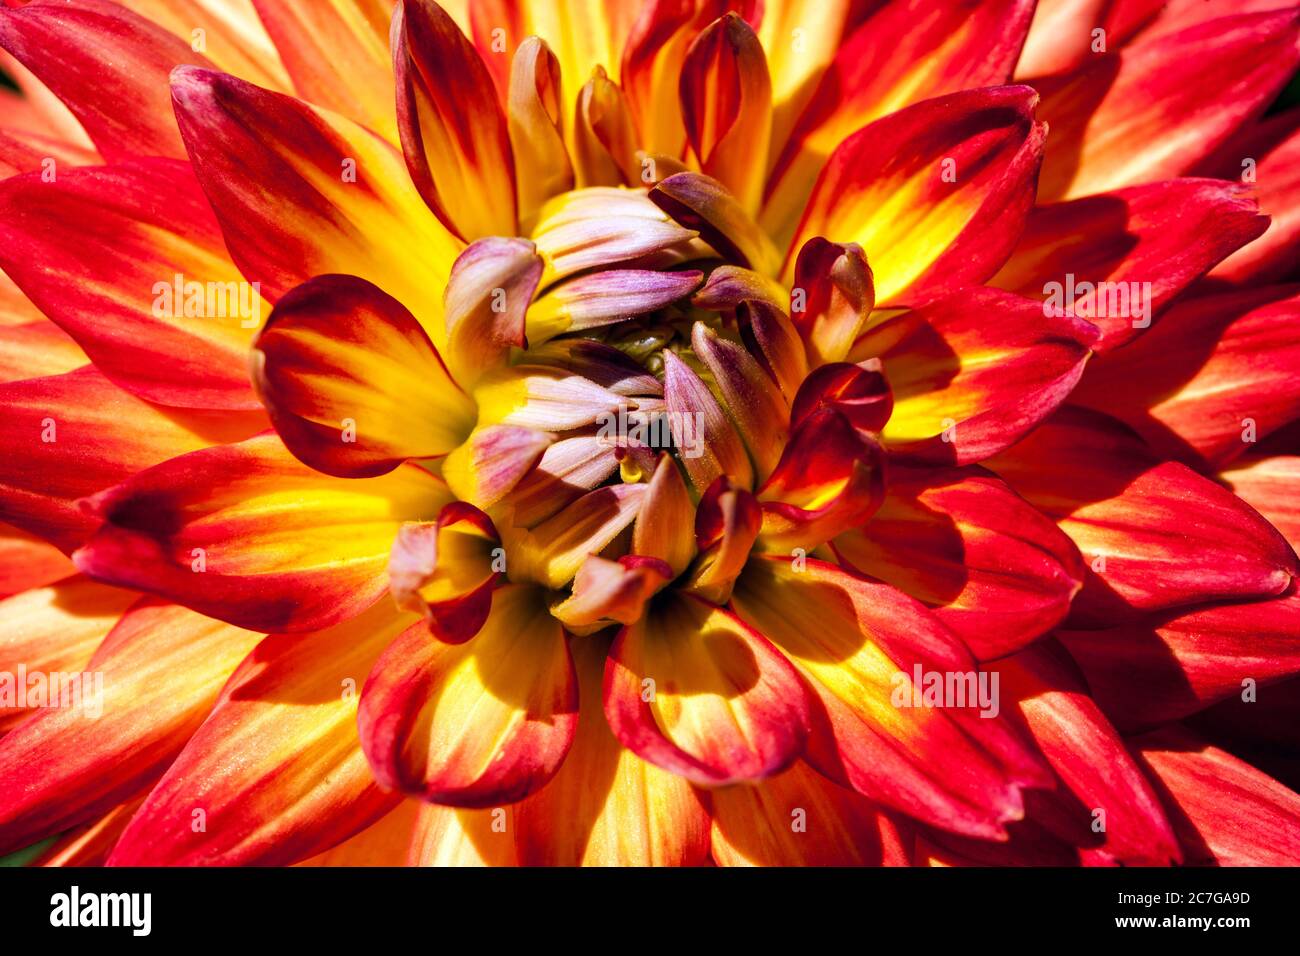 Bella Dahlia fiore 'Electric Flash' rosso-arancione miscela vivace primo piano fiore Foto Stock